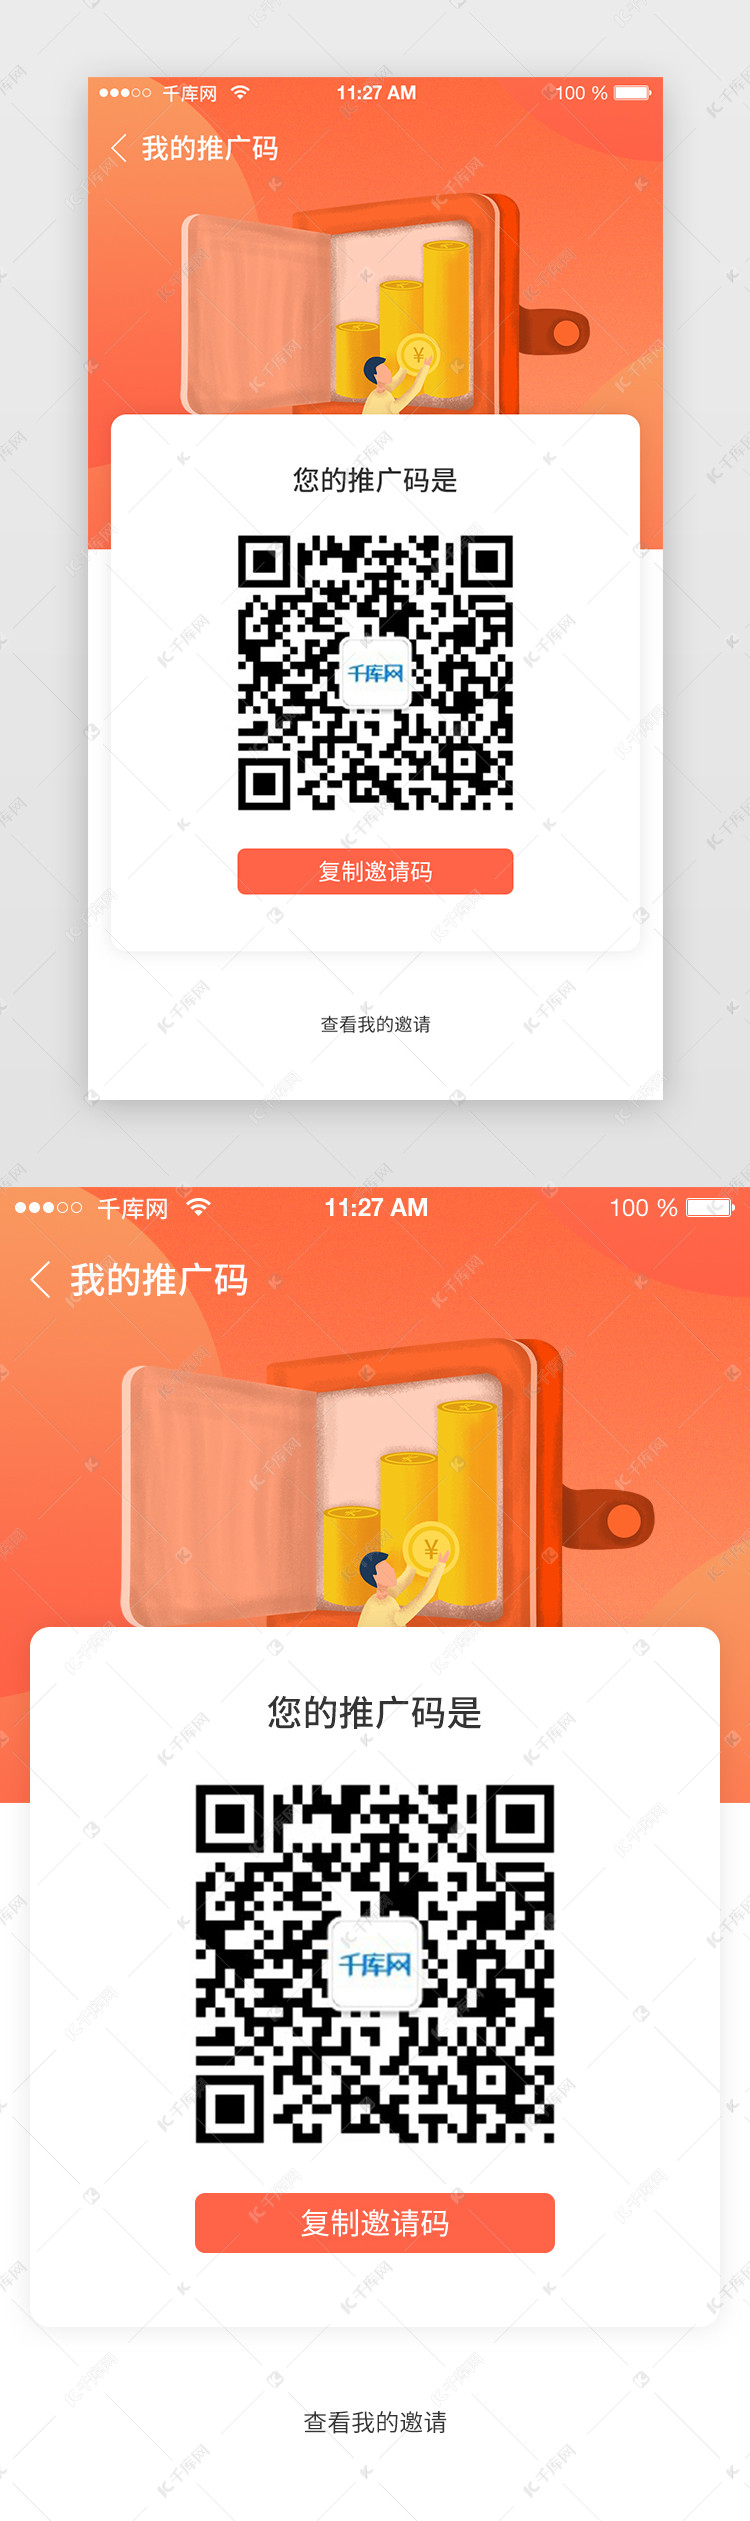 千库ui频道为app二维码邀请好友注册活动推广界面设计提供免费下载